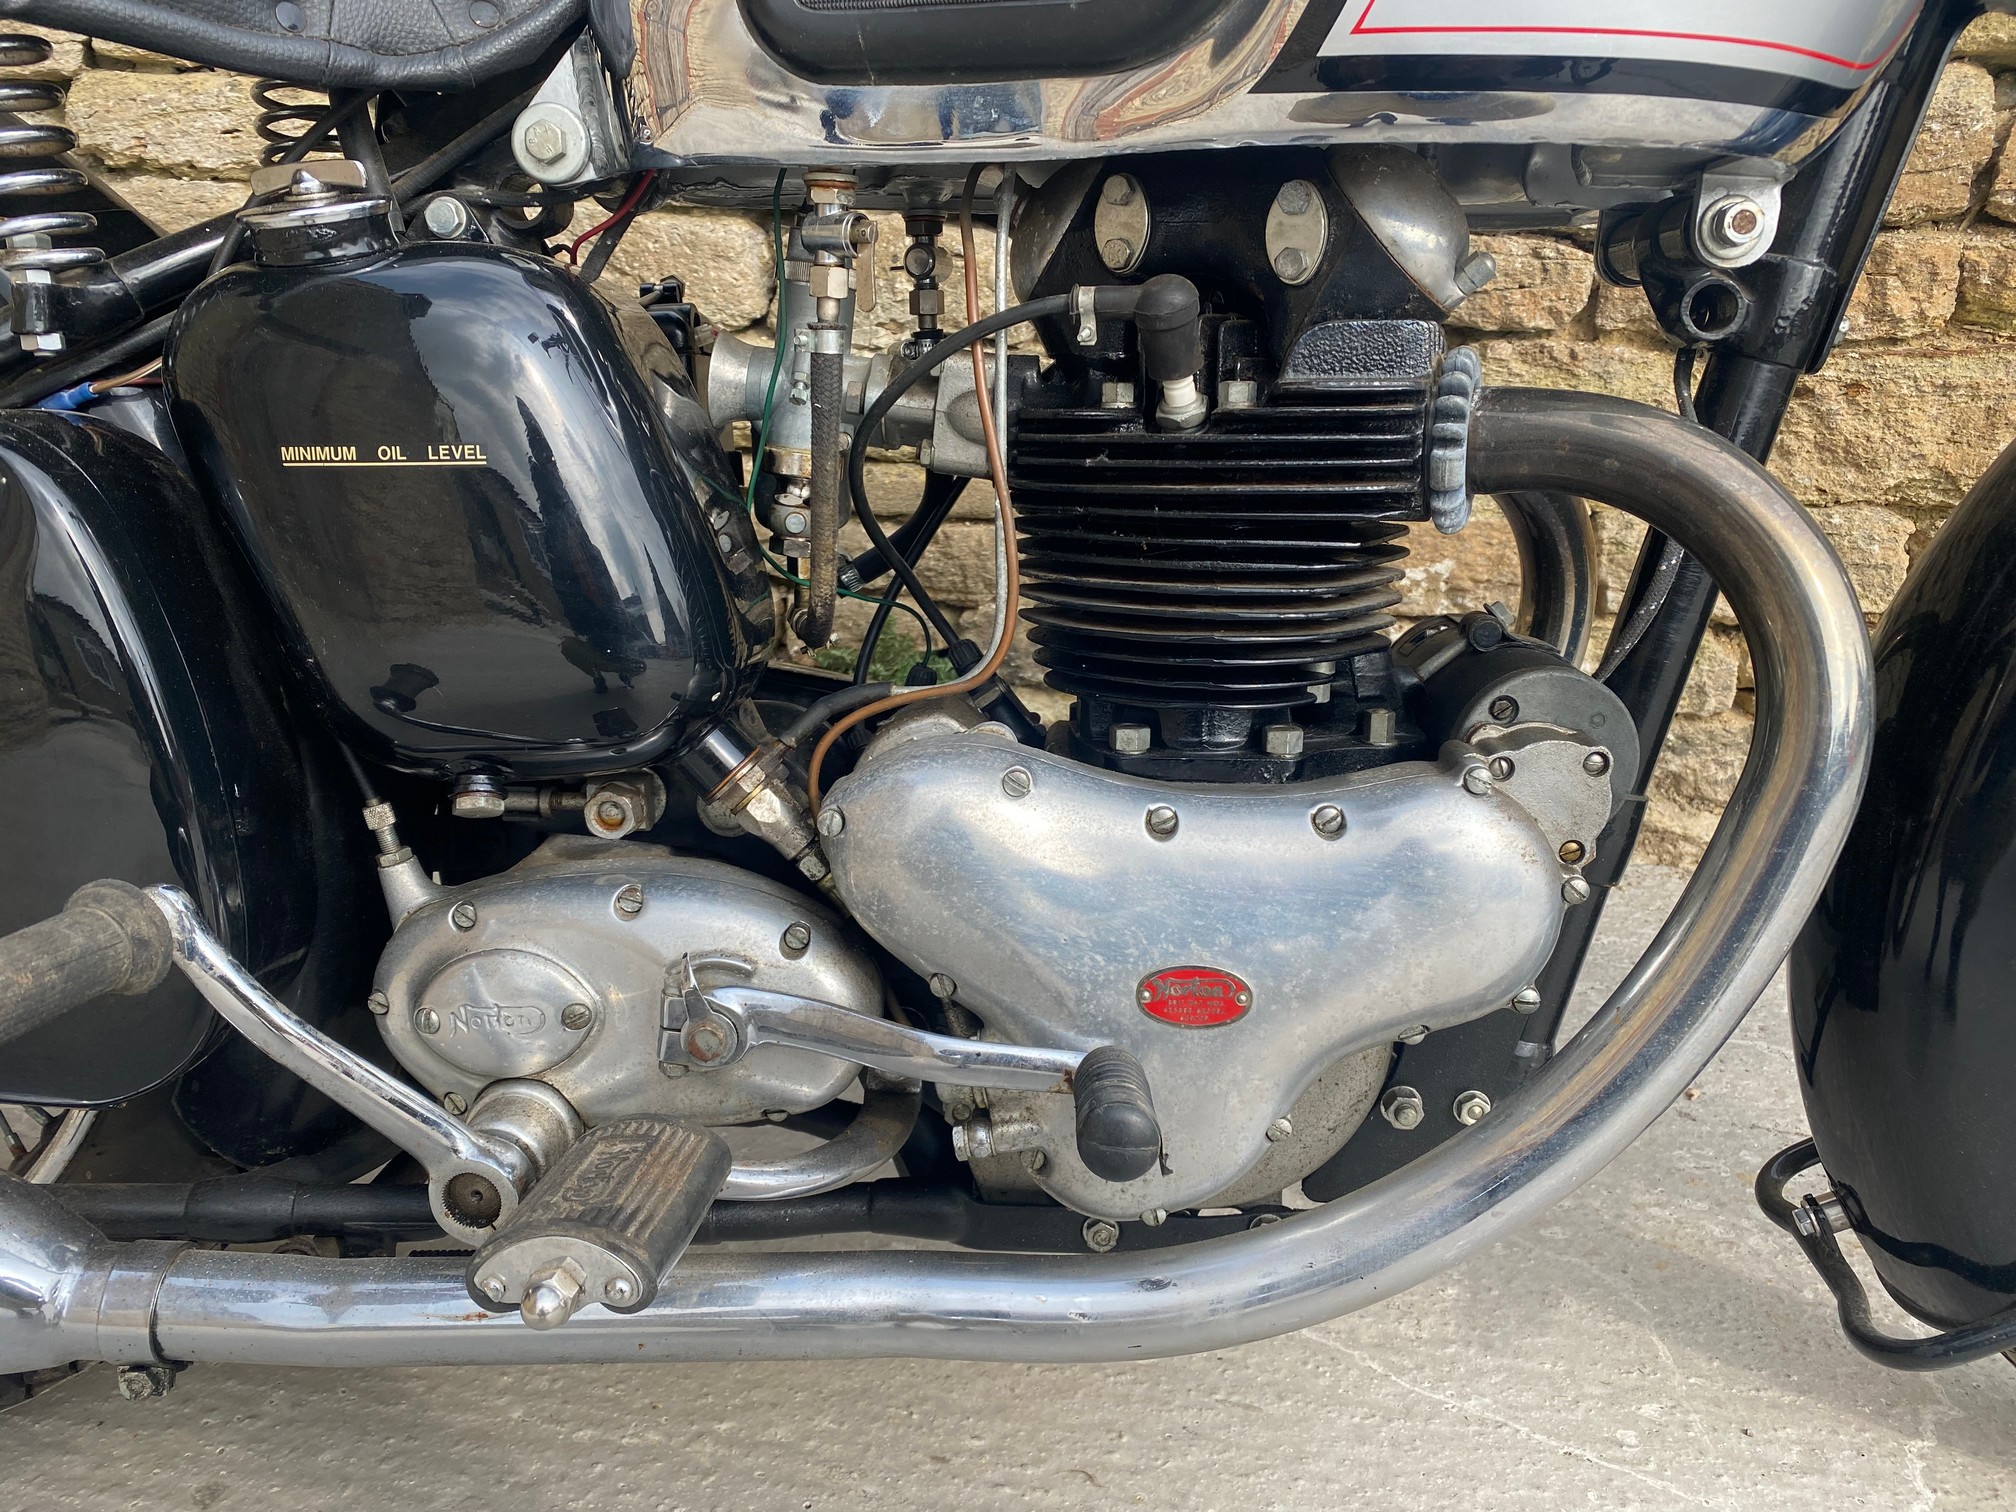 1950 Norton Model 7 500cc Reg. no. 435 UXR Frame no. E1228835 Engine no. E1228835 - Image 3 of 9